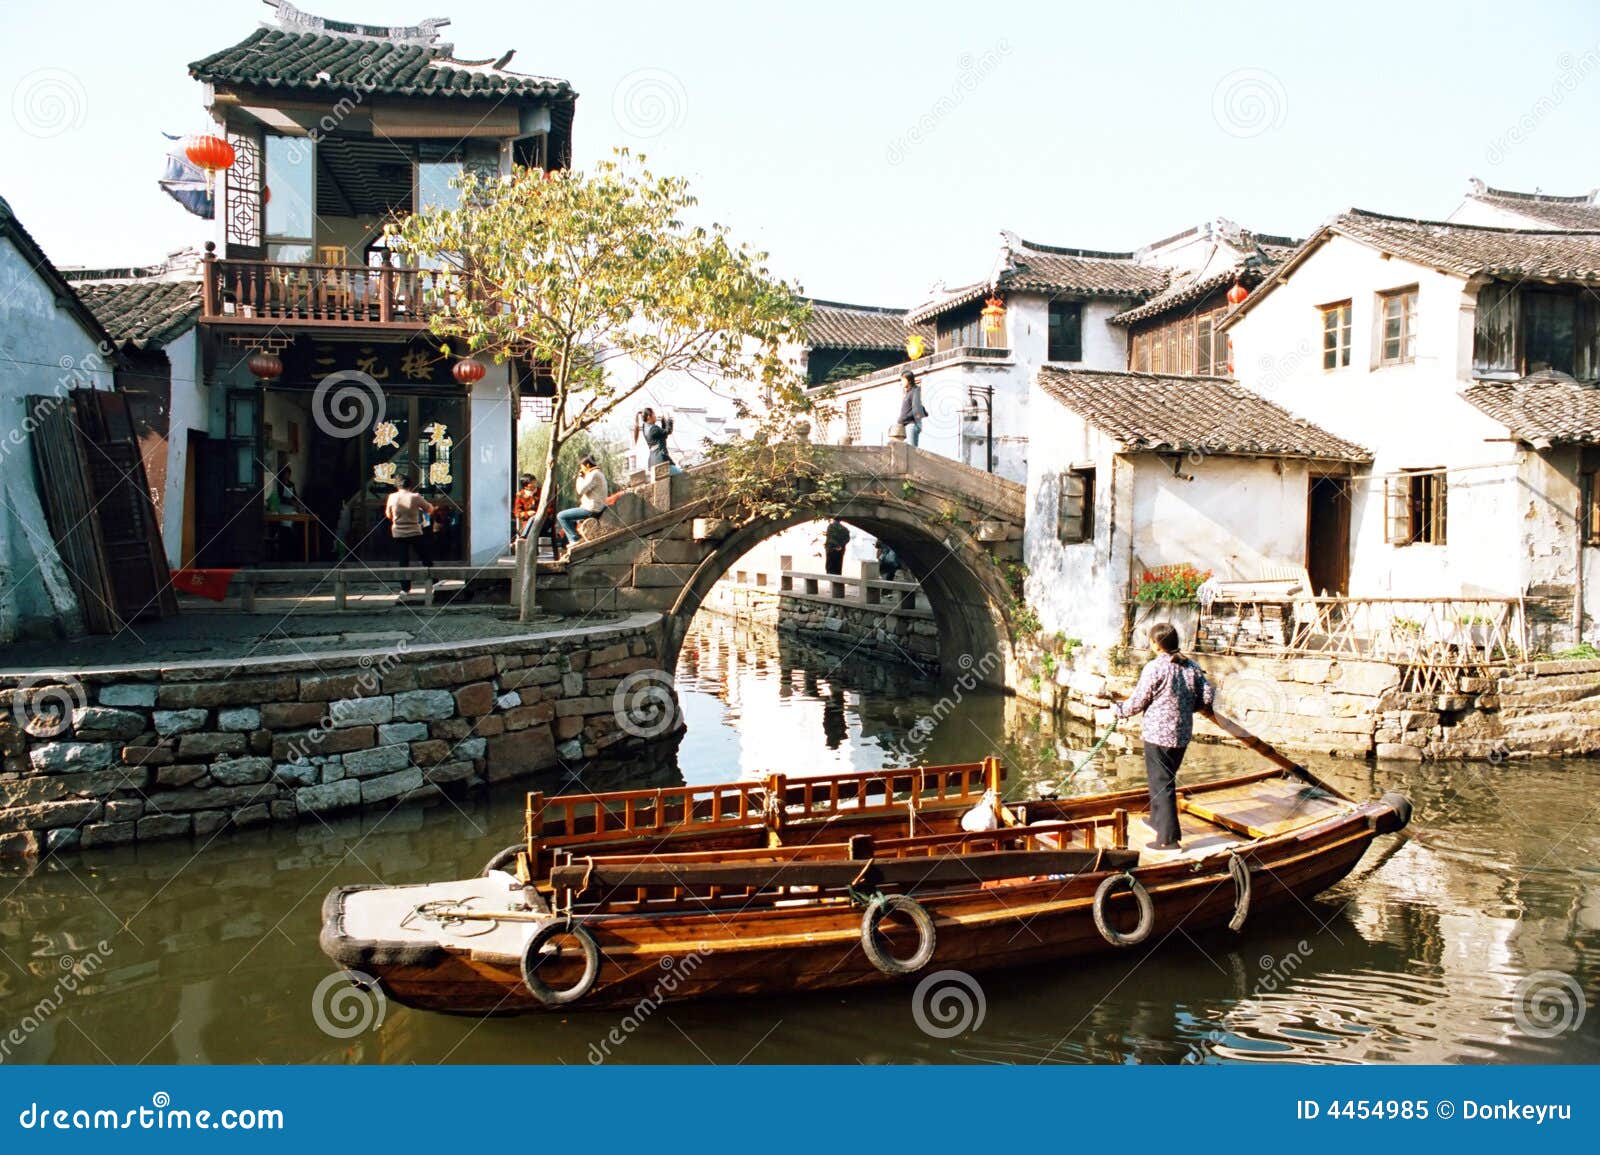 the zhouzhuang watery town